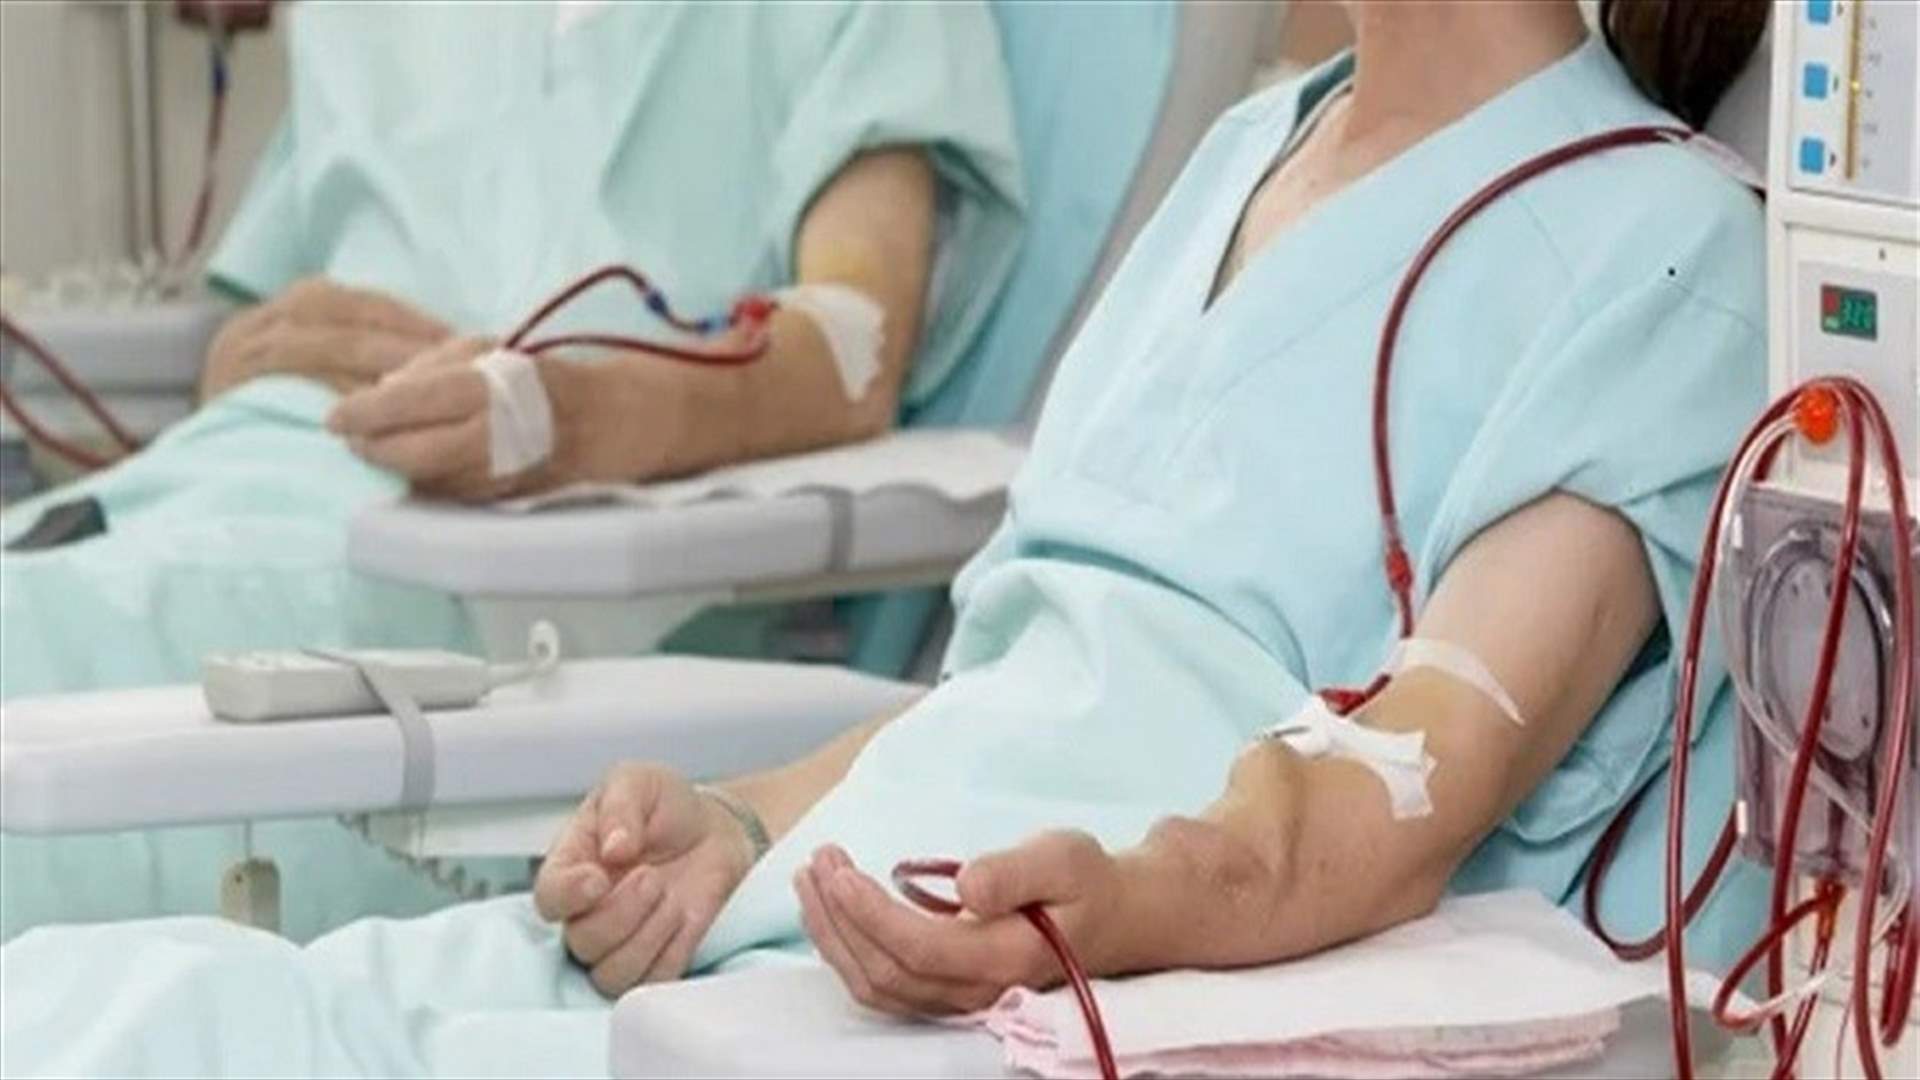 الجمعية اللبنانية لأمراض الكلى والضغط تحذر من استيفاء بدل اتعاب أطباء غسل الكلى مباشرة من المريض